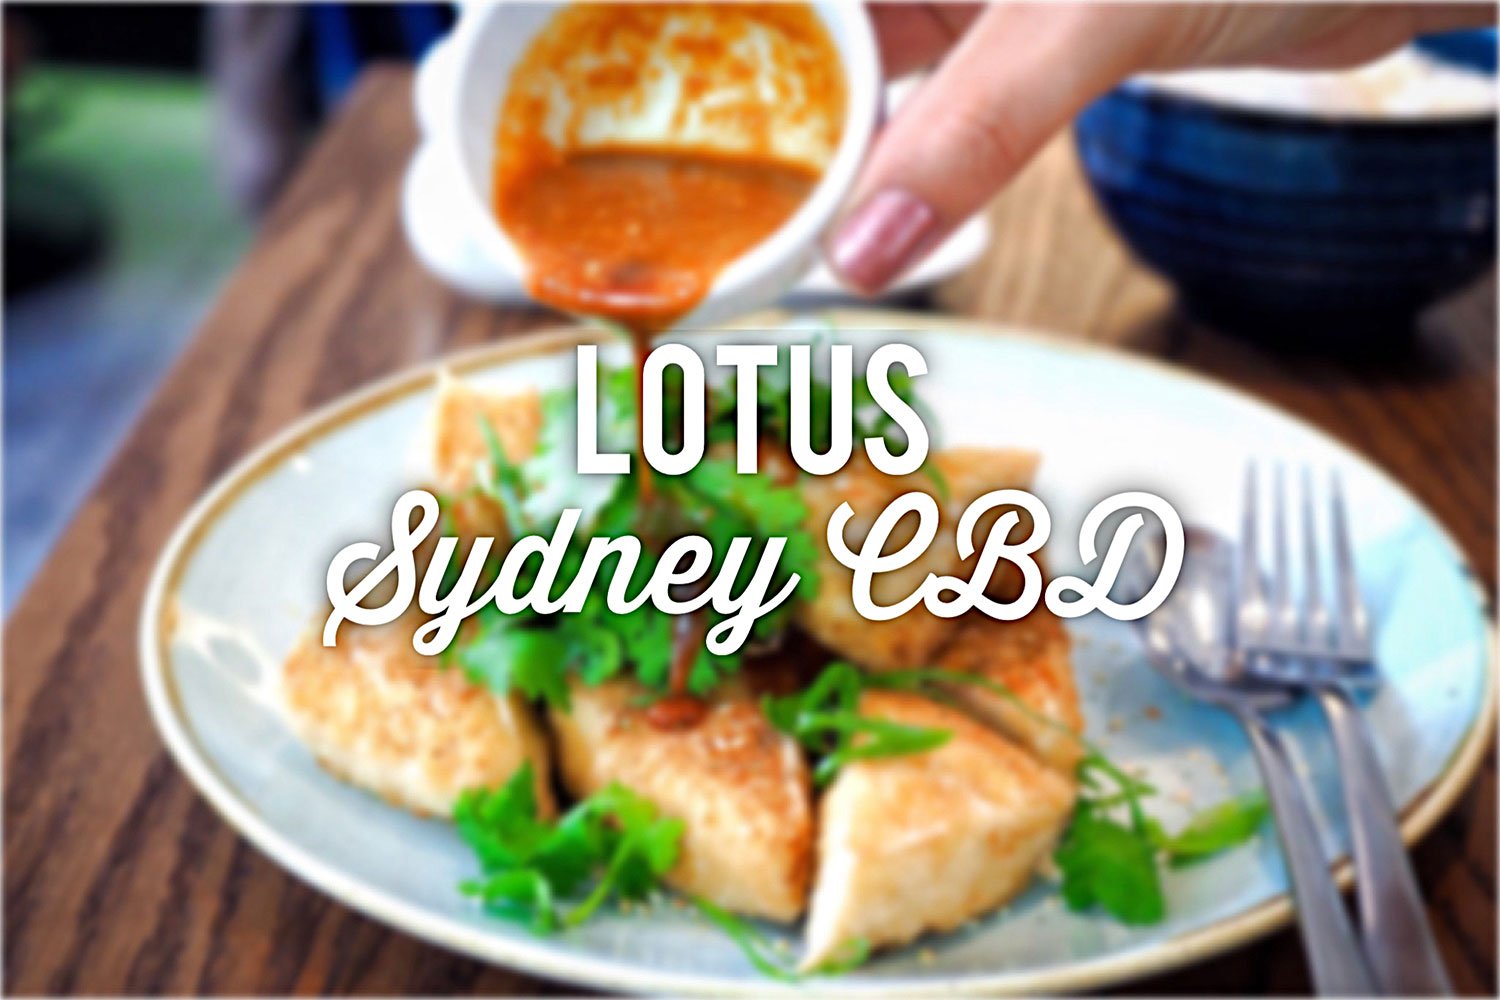 Lotus, Sydney CBD. Sydney Food Blog Review